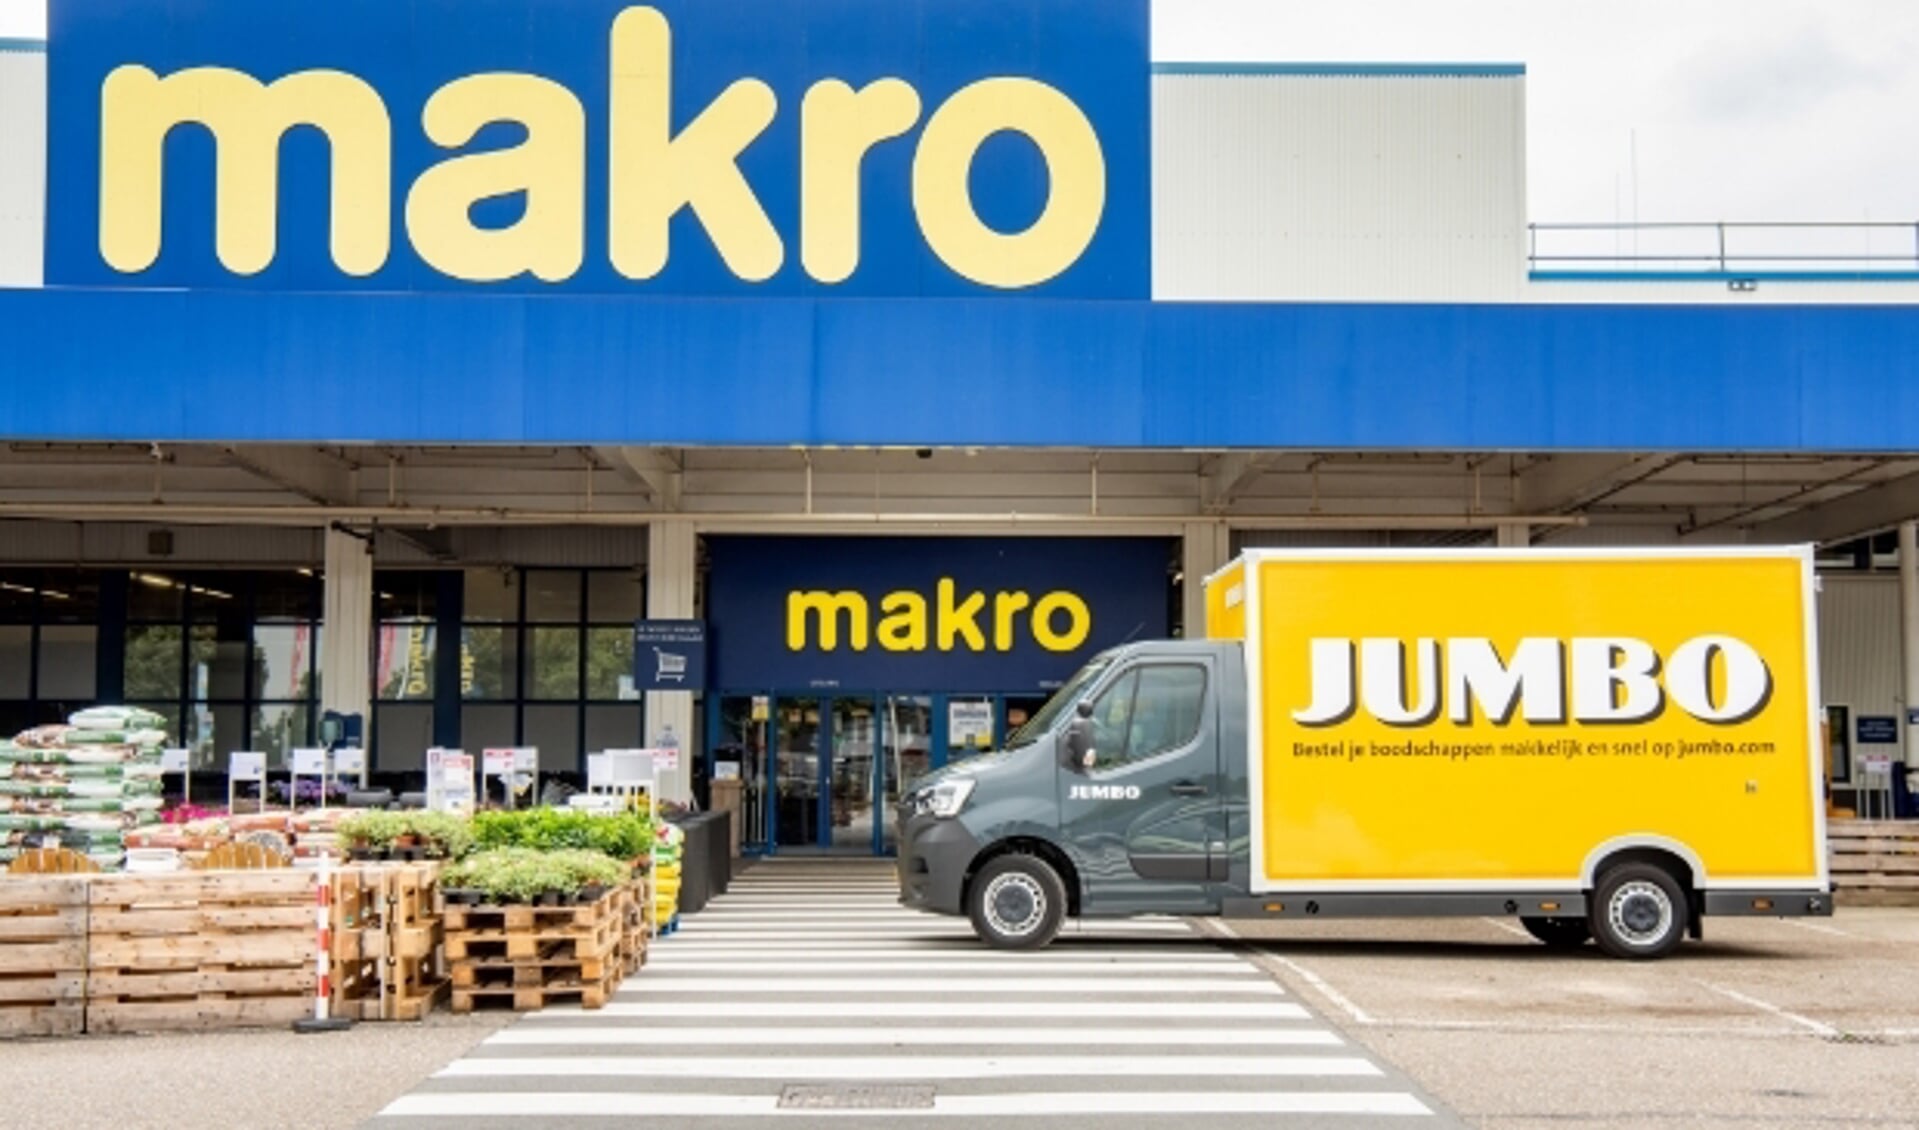 Jumbo en Marko gaan vanaf deze maand samenwerken op de zakelijke markt. (Foto: Jumbo PR)